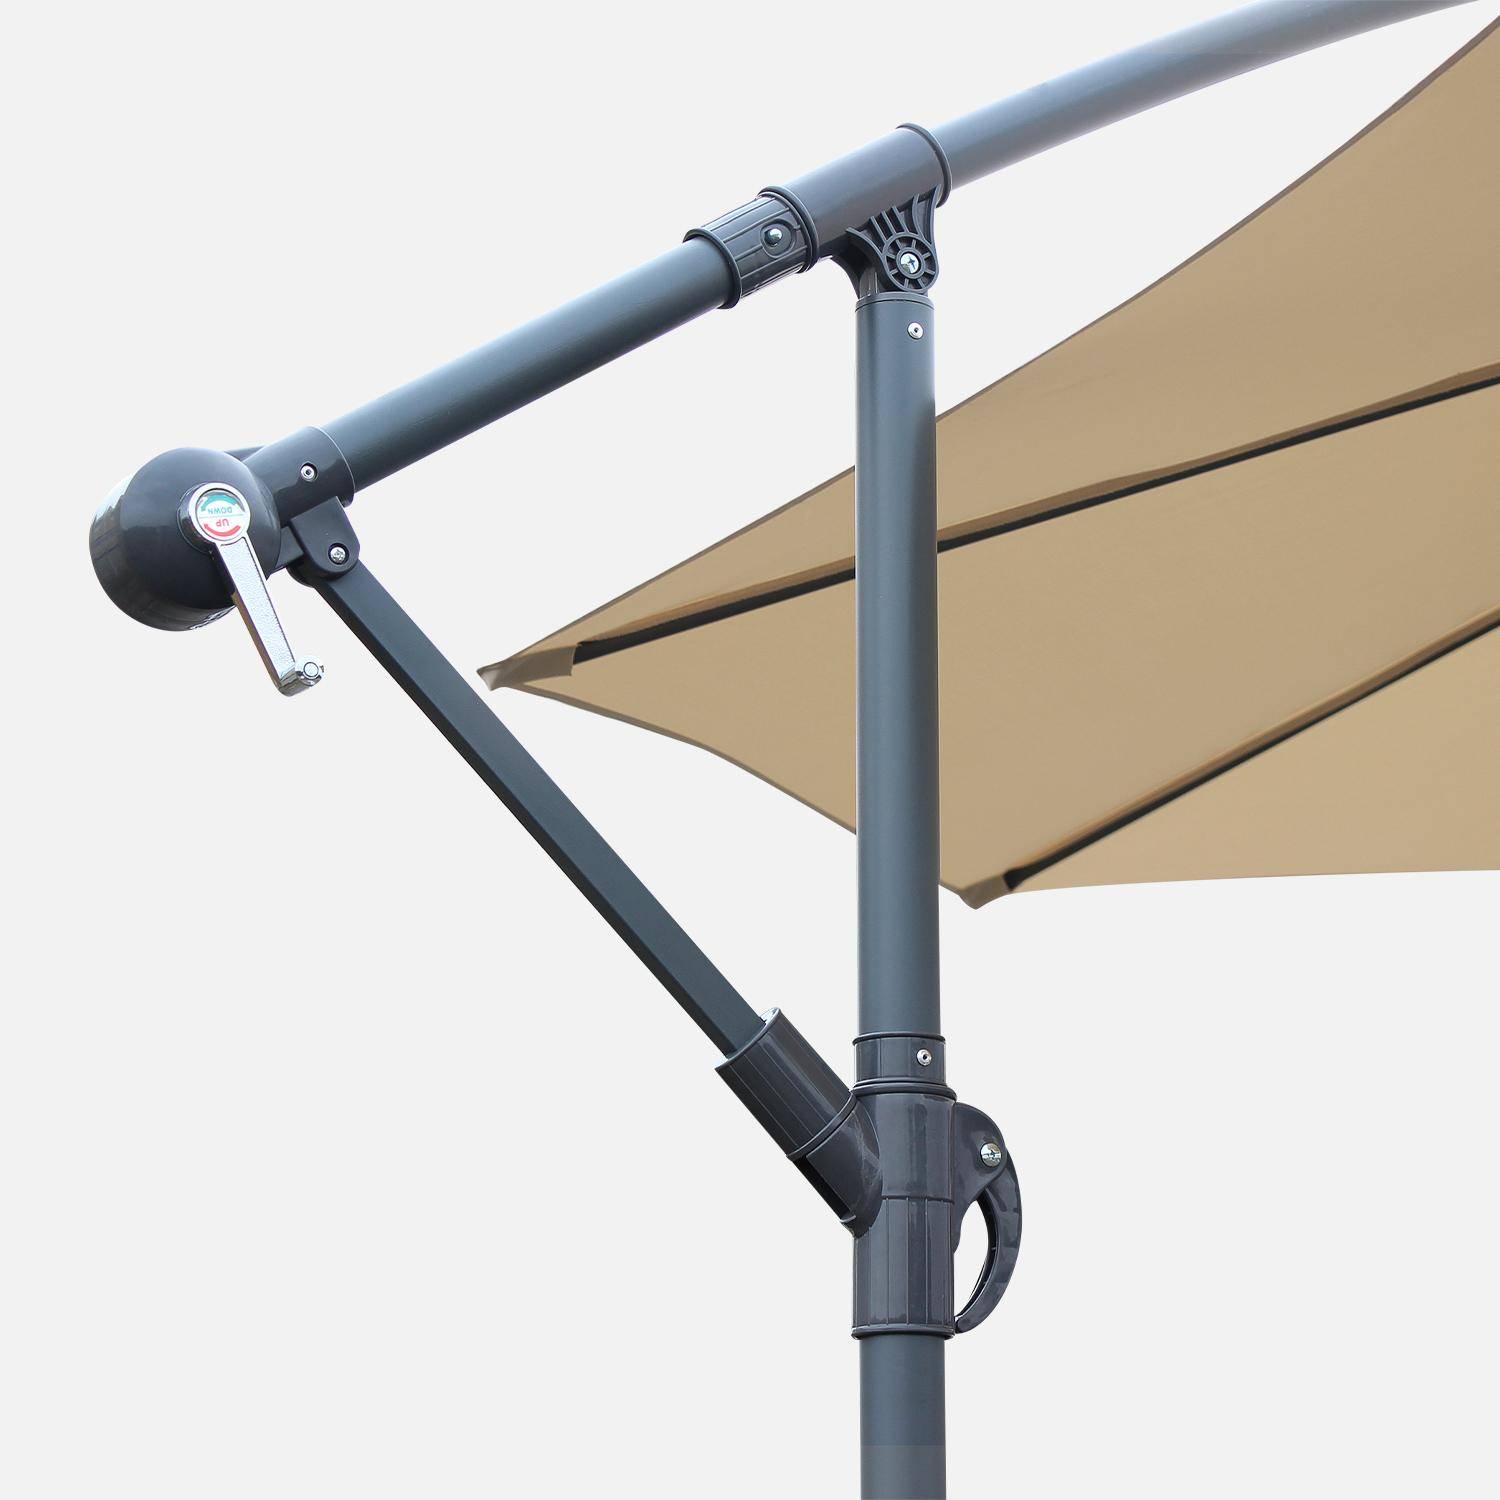 3x3m guarda-chuva redondo deportado - Hardelot - Bege - Manivela anti-retorno | Tecido repelente à água | Fácil de usar Photo4